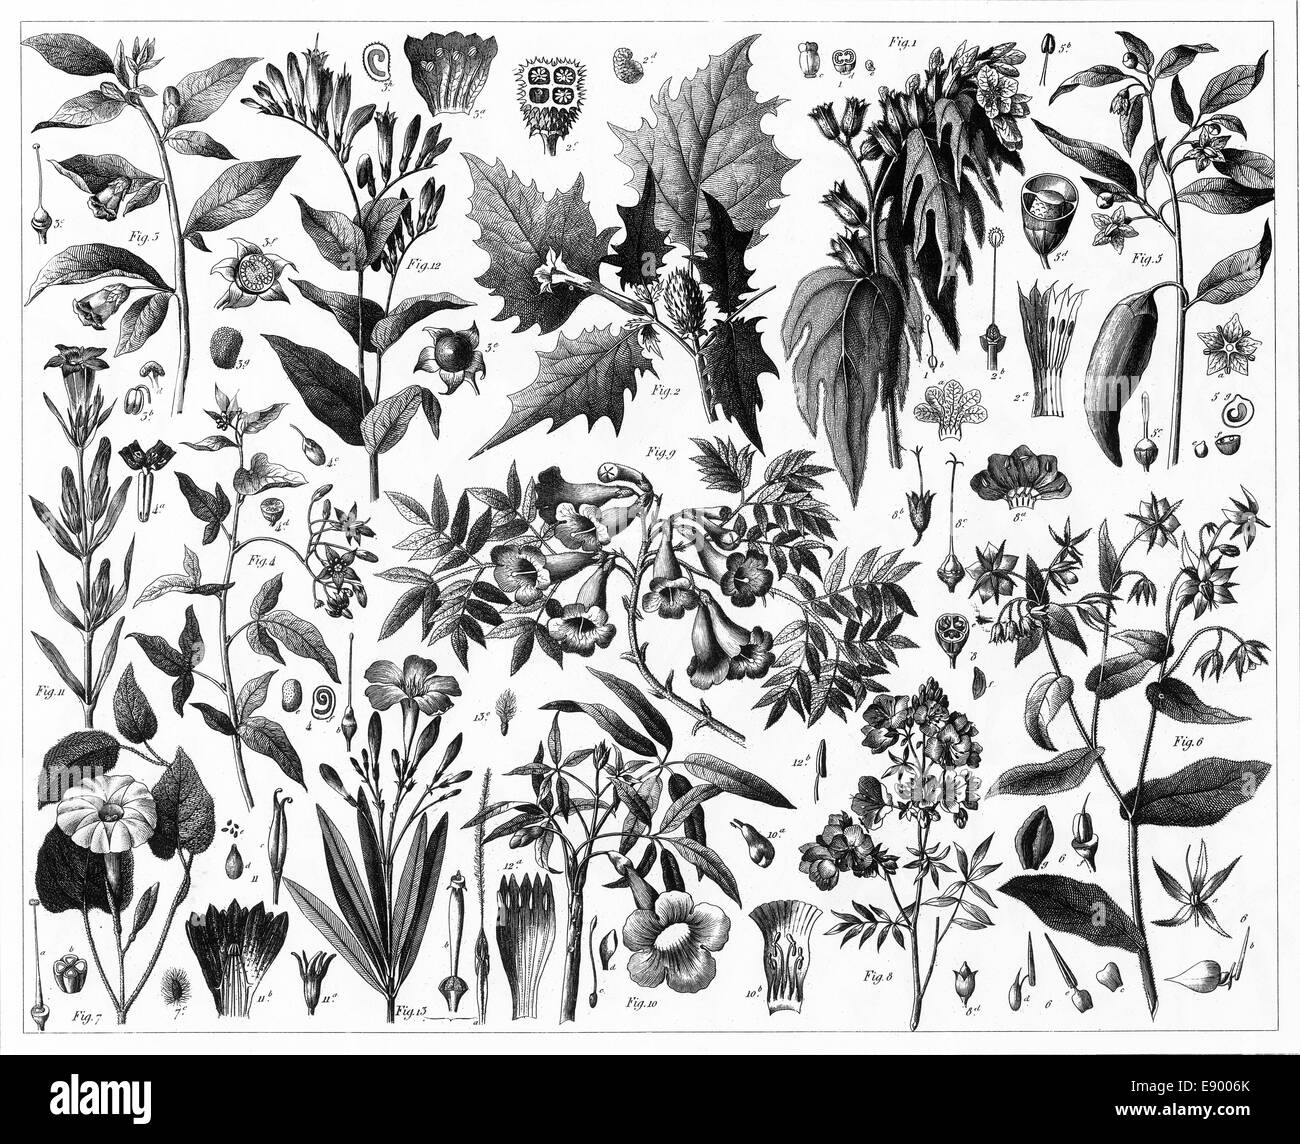 Le illustrazioni incise di piante tossiche da enciclopedia iconografico della scienza, letteratura e arte, pubblicato nel 1851. Foto Stock